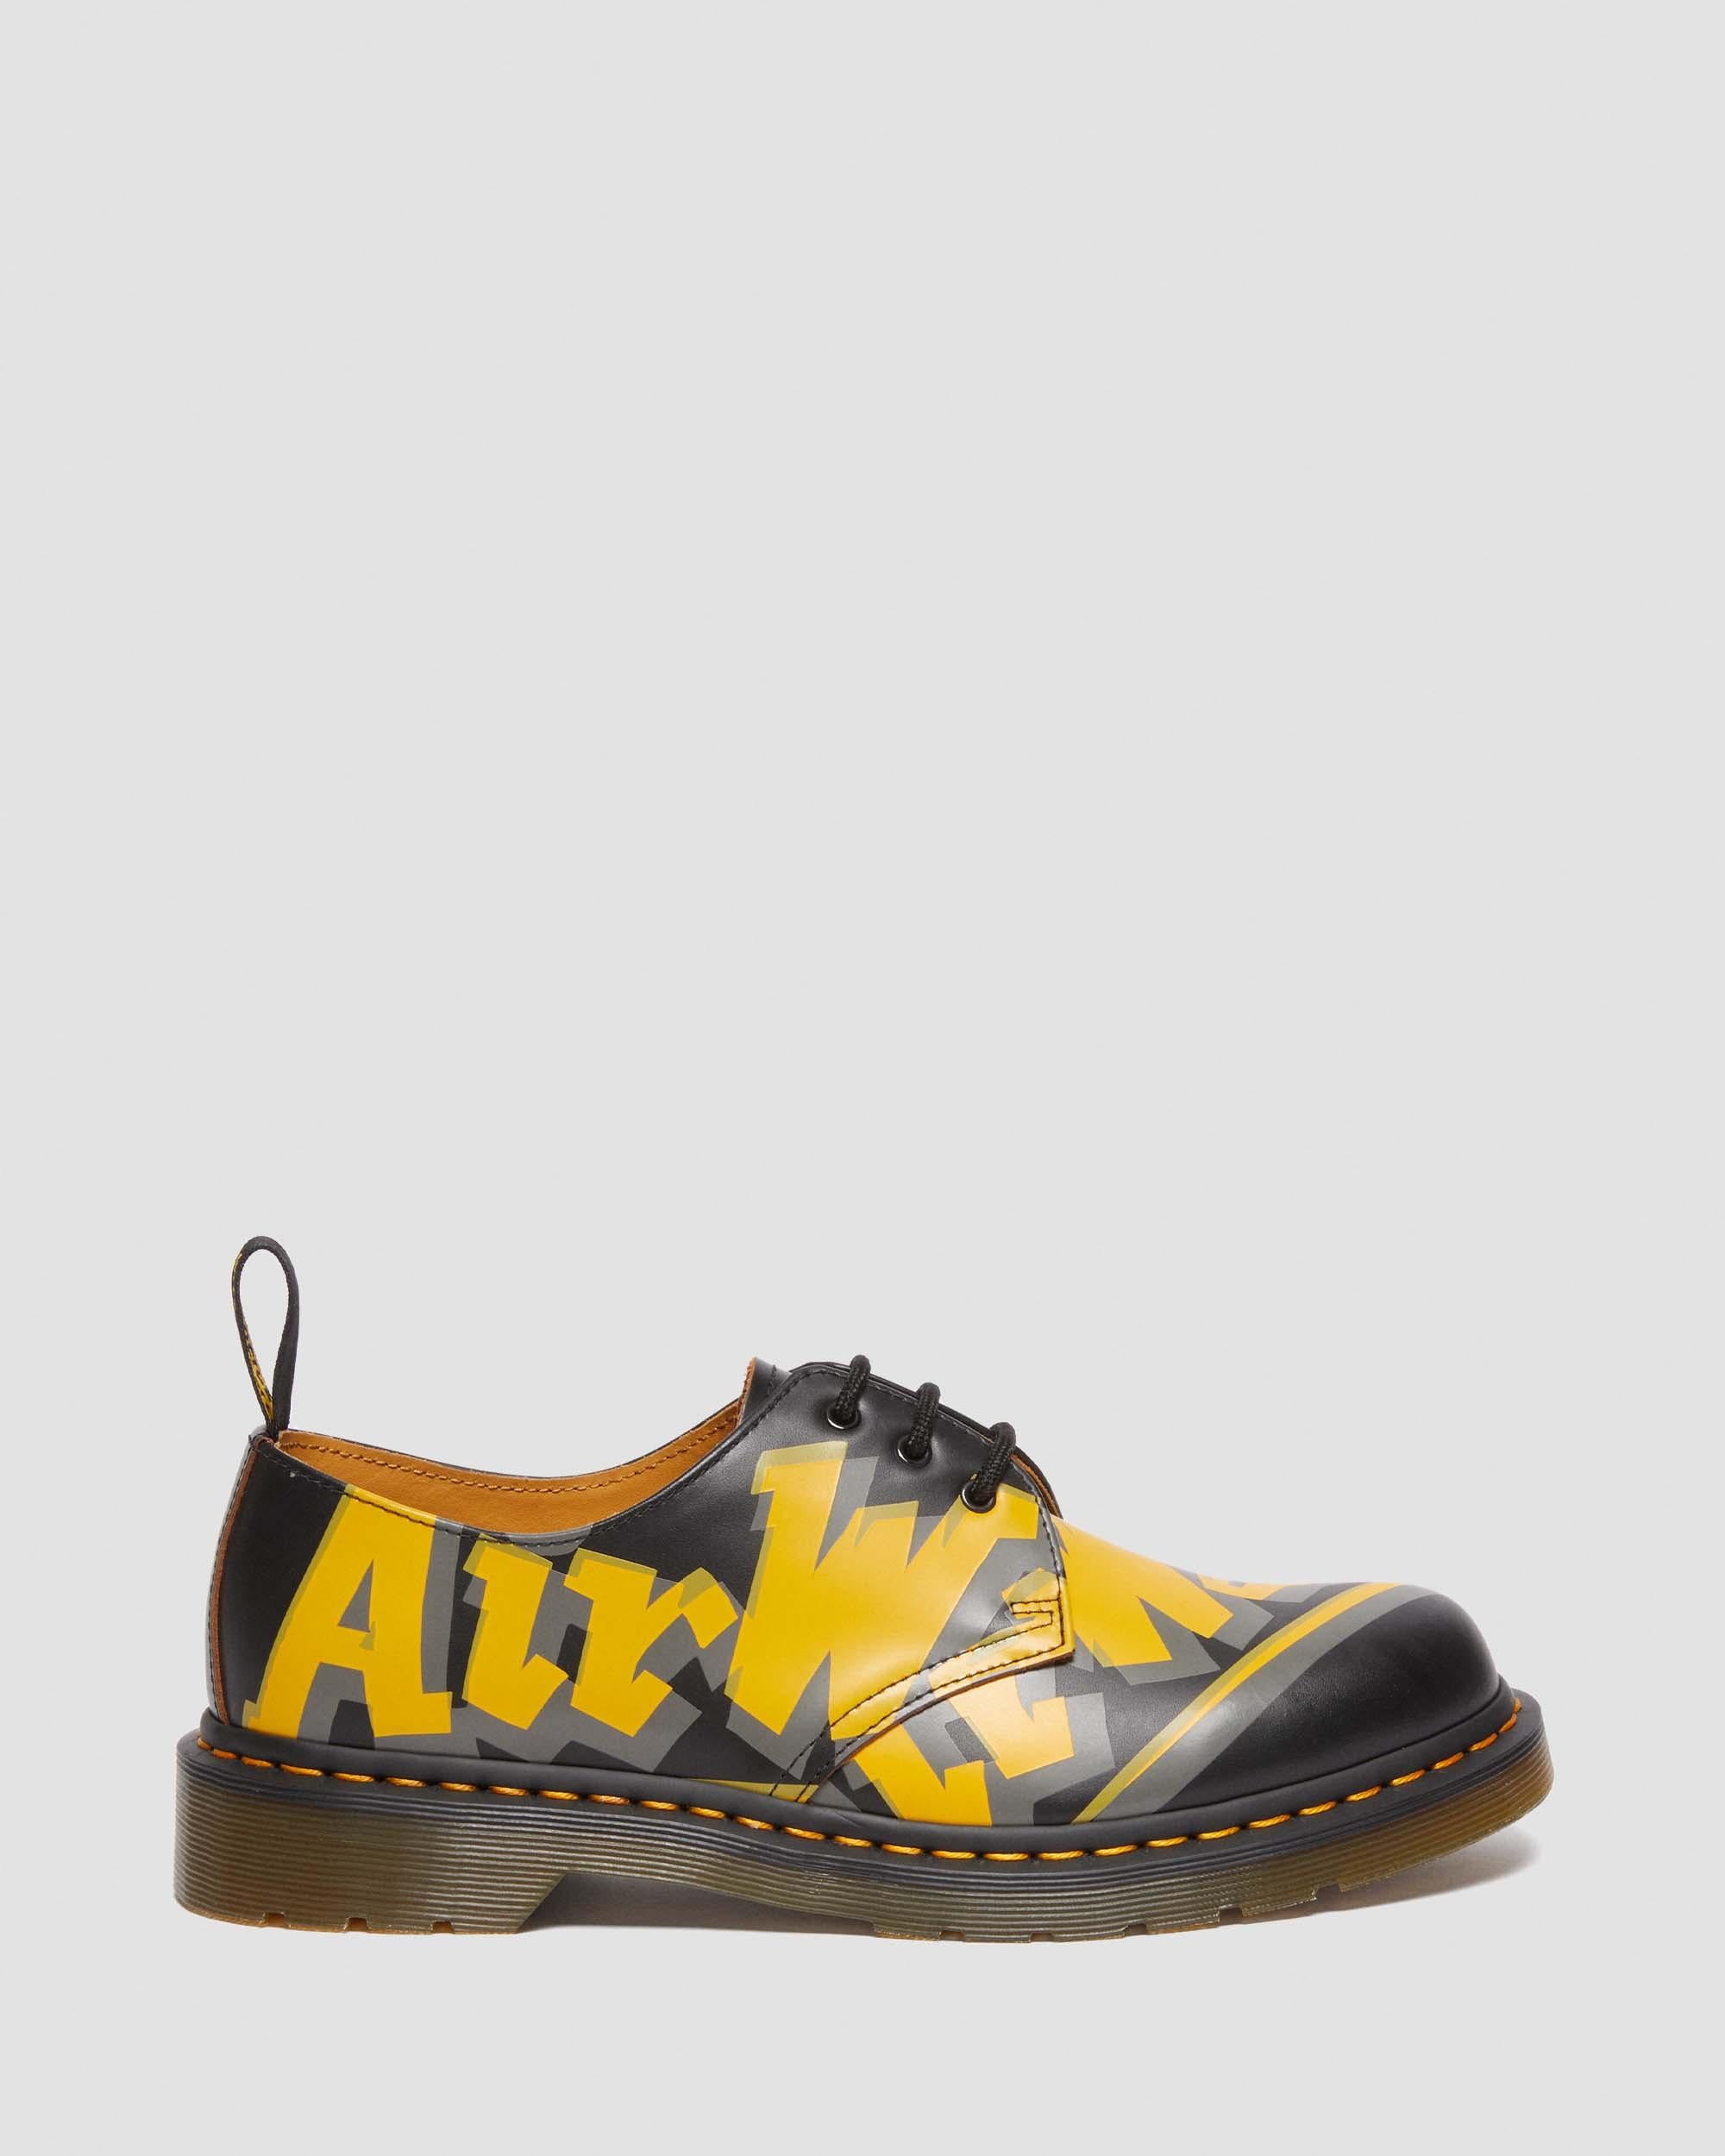 1461 Airwair Vintage 光滑皮鞋